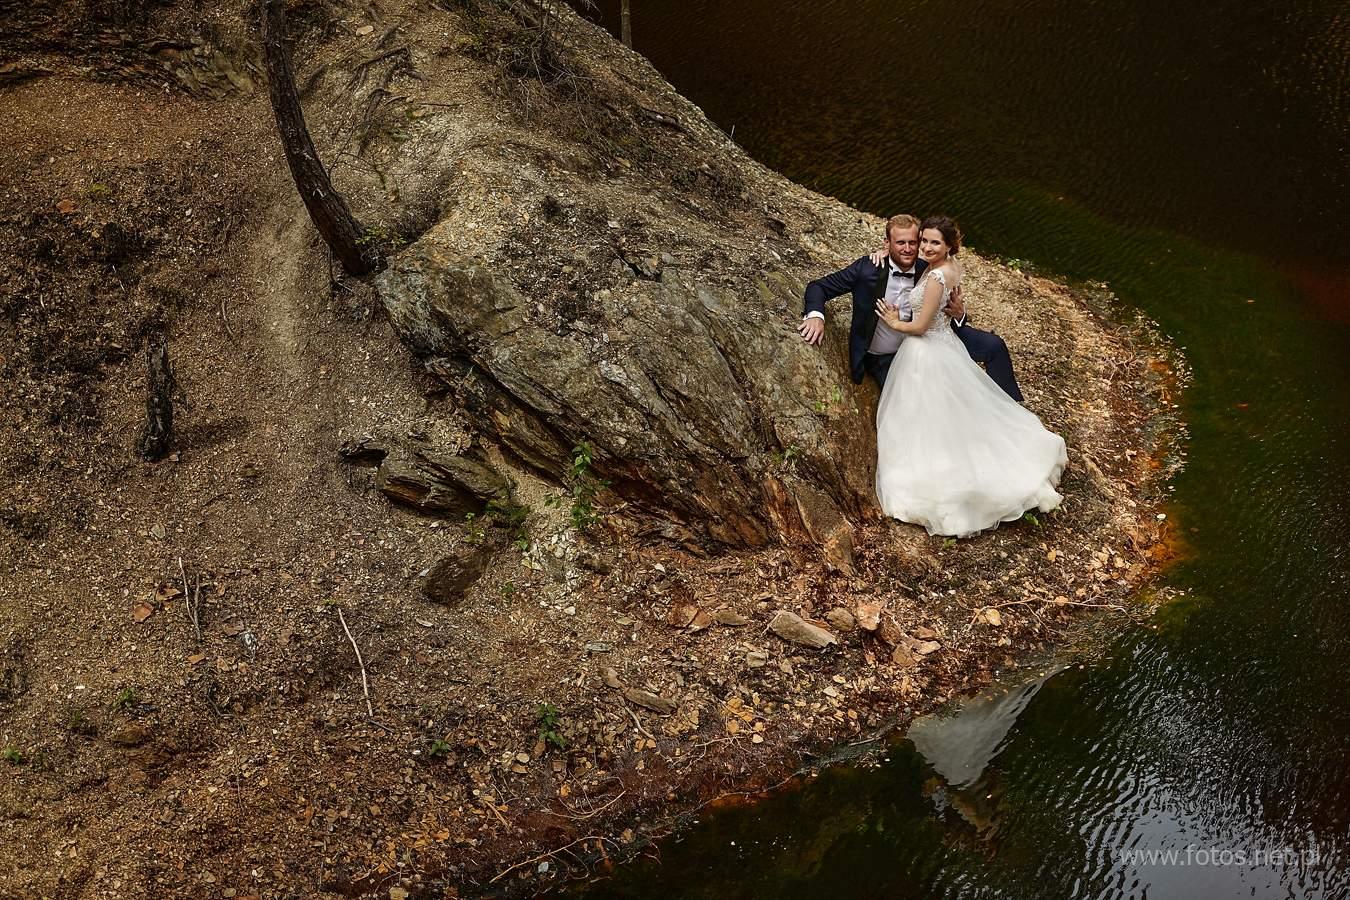 sesja ślubna kolorowe jeziorka rudawy janowickie w karpaczu karkonoszach dziki wodospad